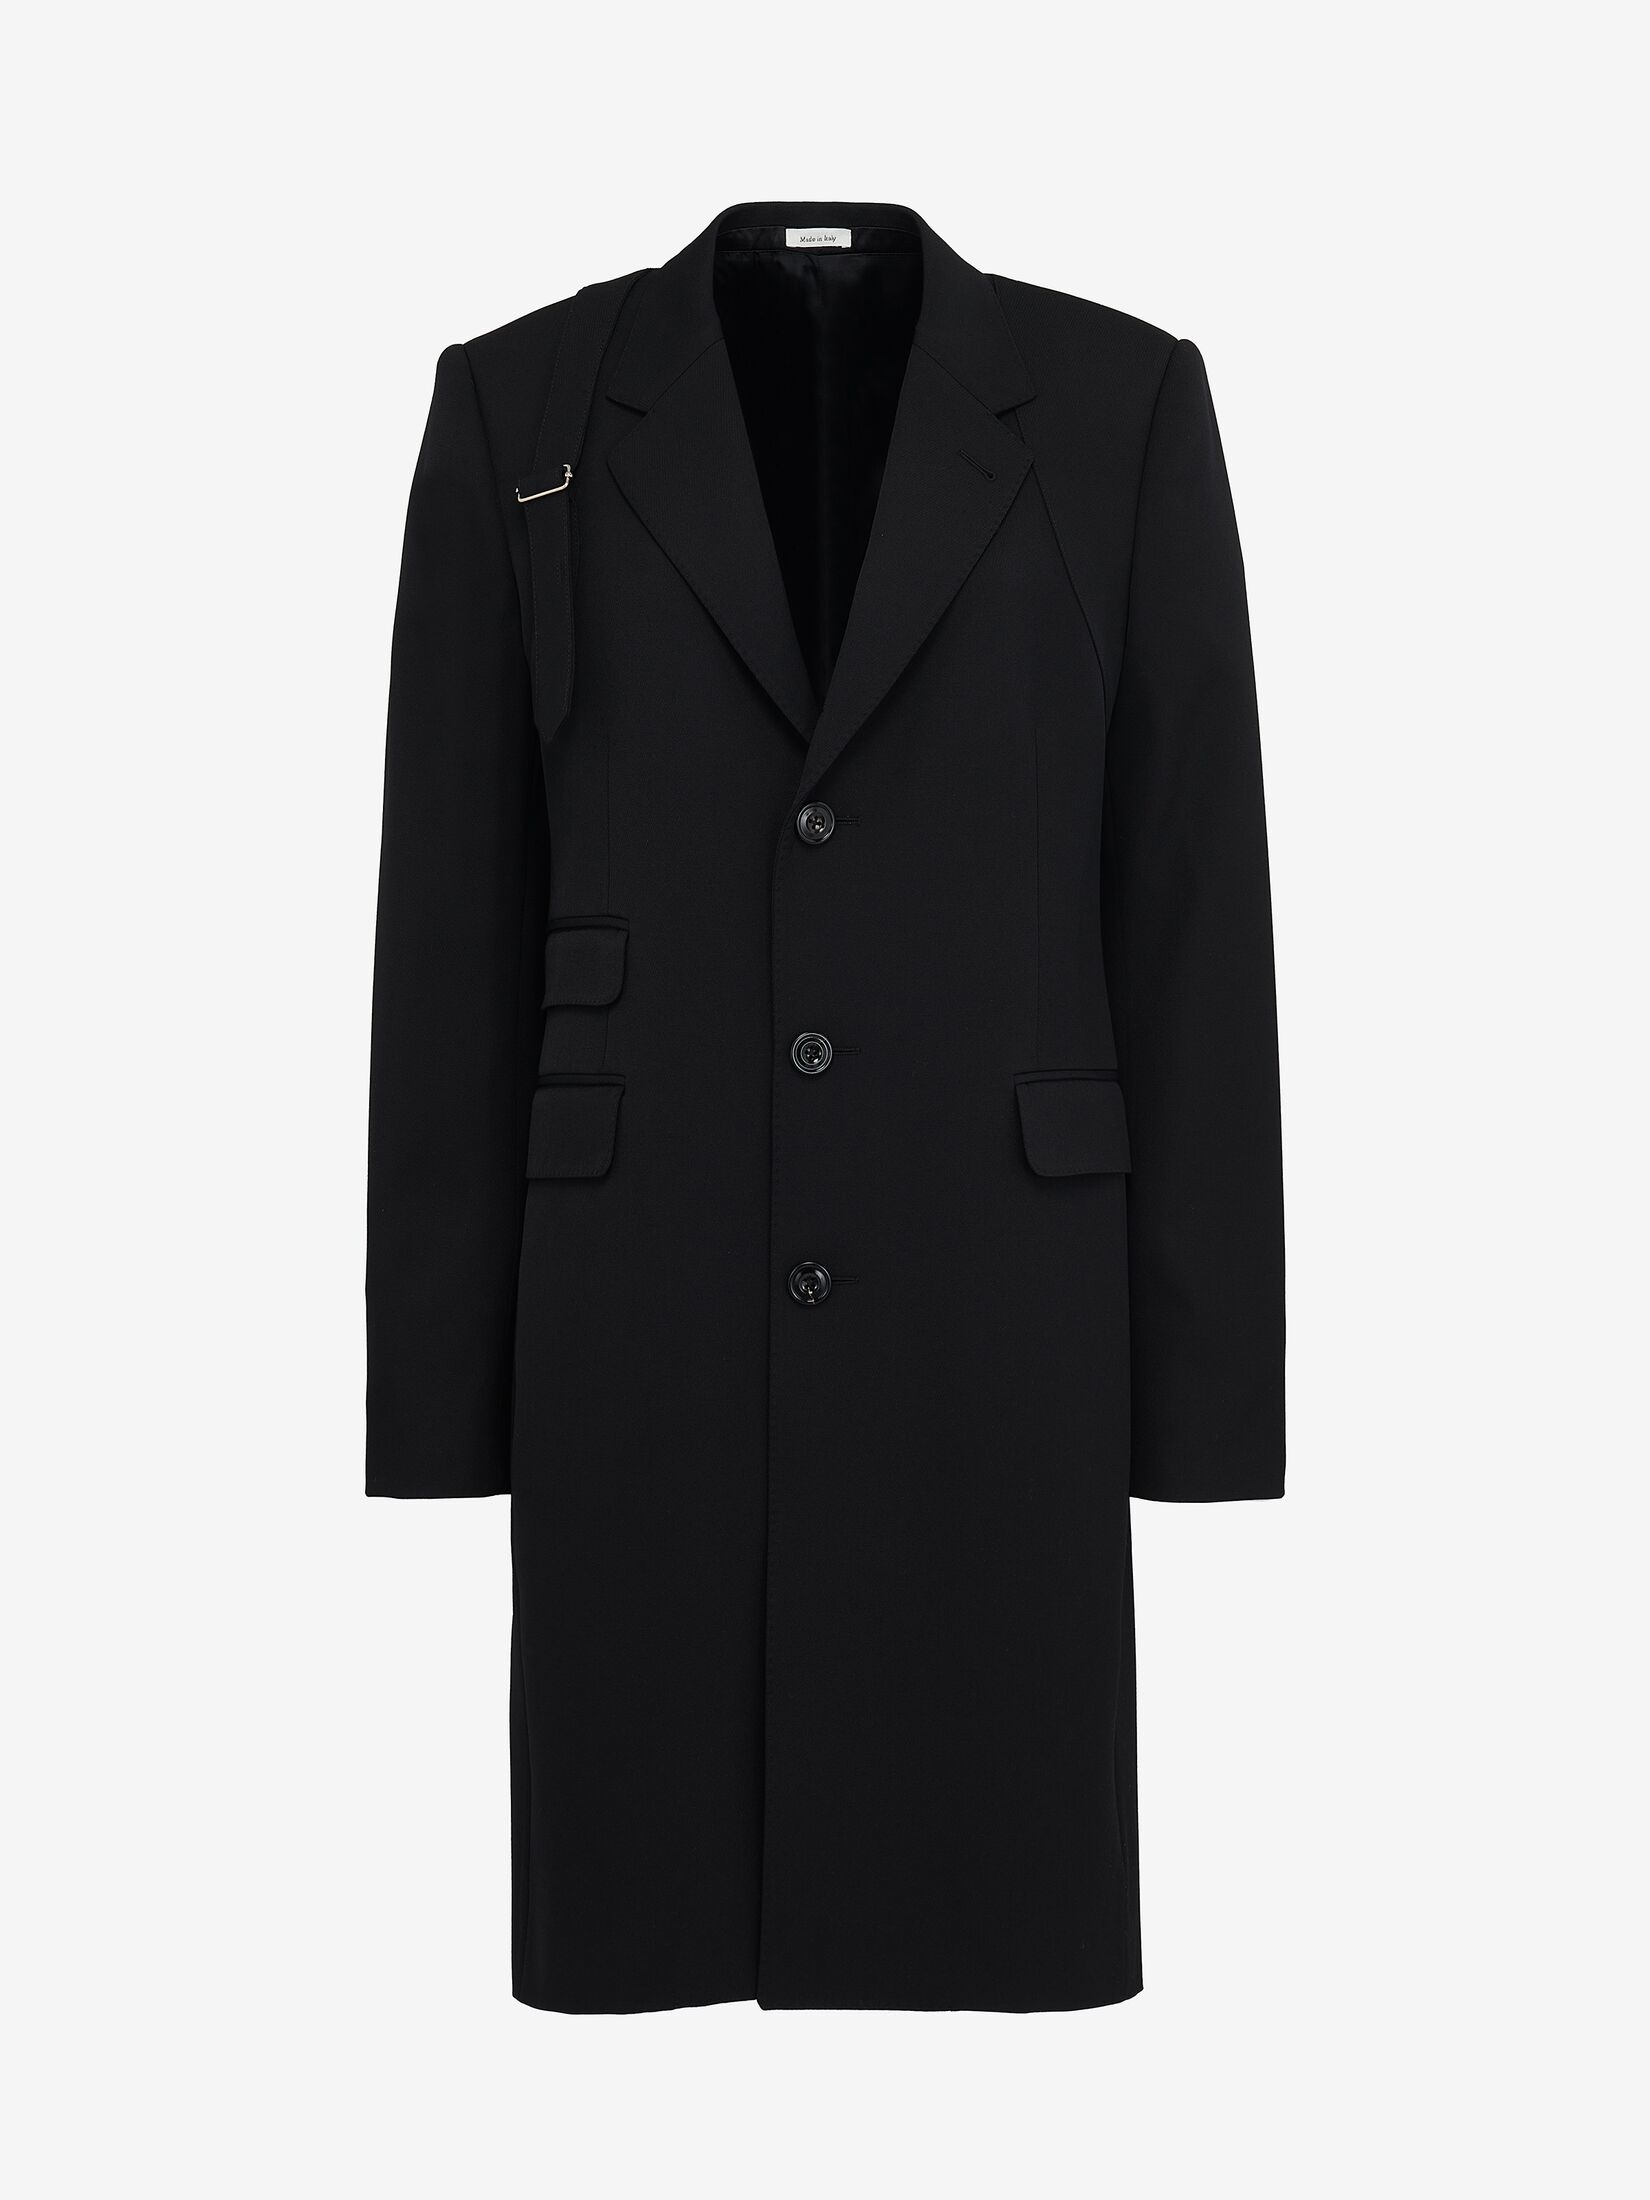 Men's McQueen Harness Coat in Black - 1